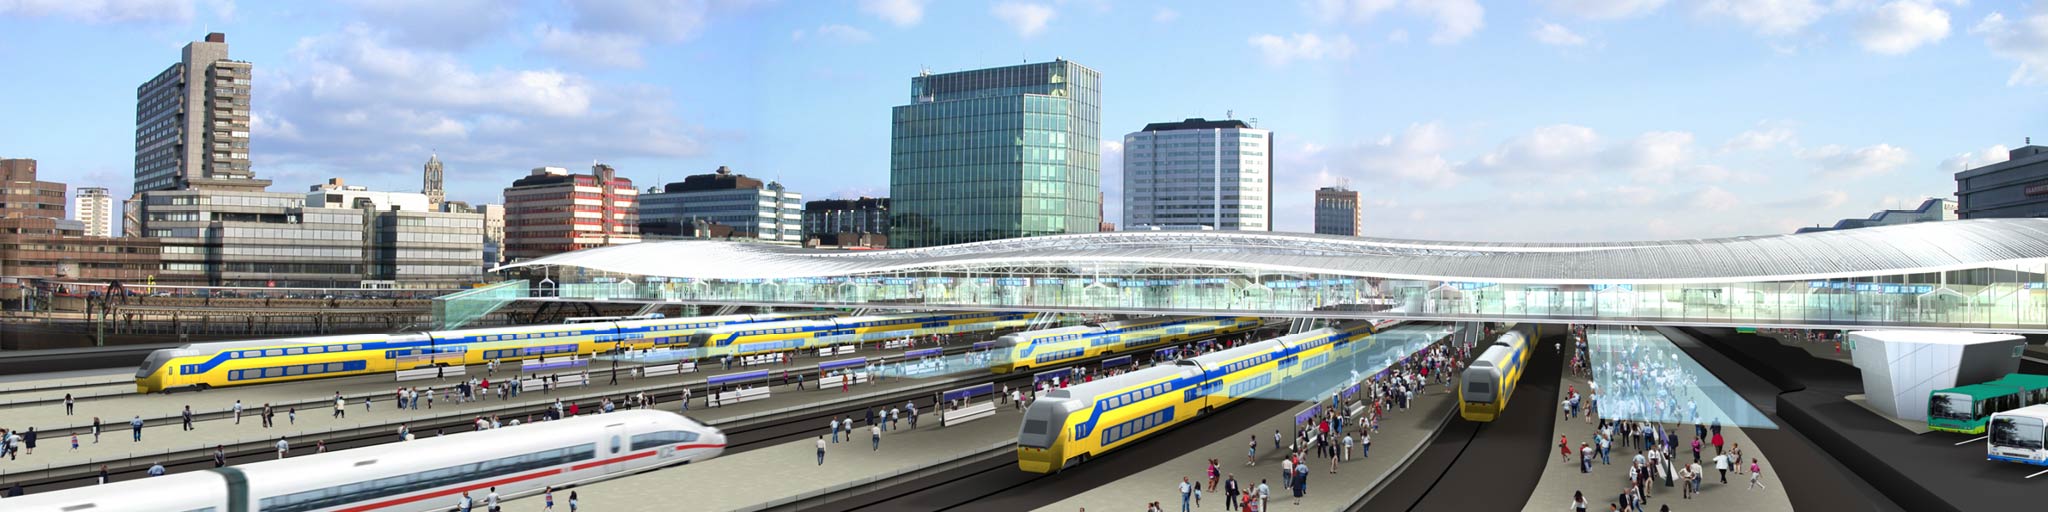 Impressie OV-terminal Utrecht Centraal |  ProRail/Benthem Crouwel Architekten